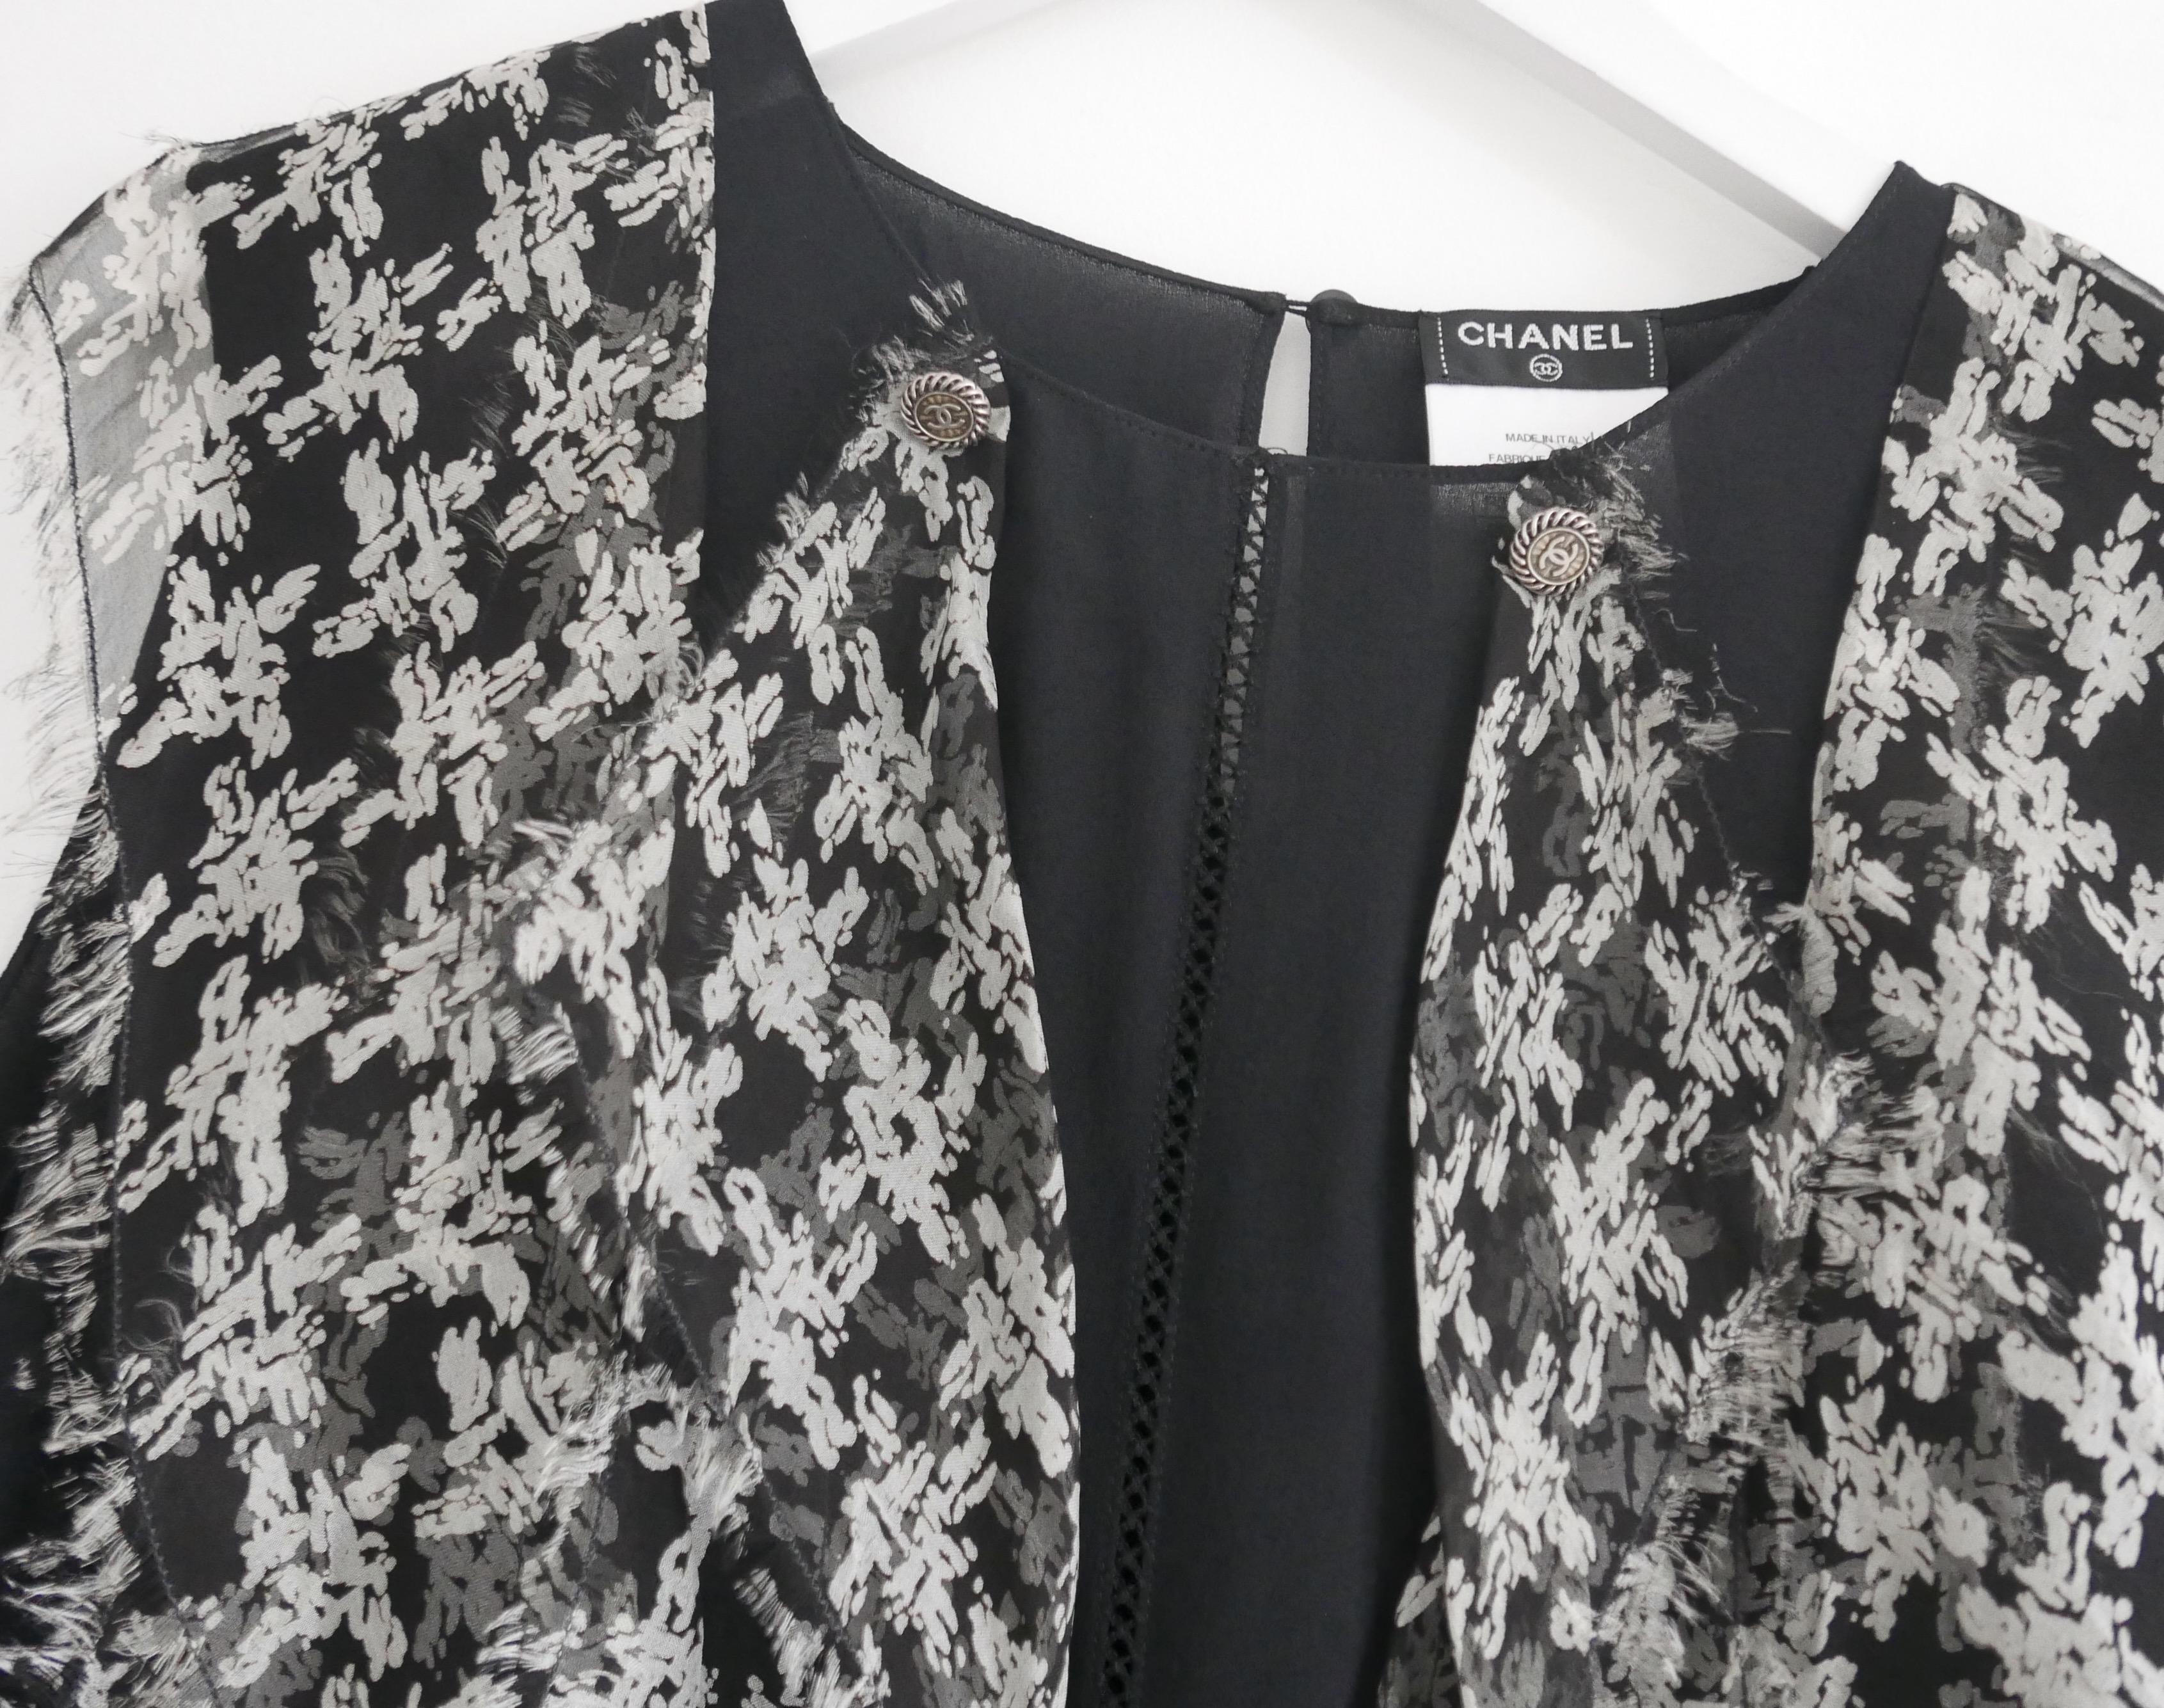 Wunderschöne Chanel Bluse aus der Spring 2010 Collection'S. Ungetragen.
Aus mattschwarzer Seide mit schaumigen Seidenrüschen im Hahnentrittmuster auf der Vorderseite. Es hat ein dünnes Leitergeflecht in der vorderen Mitte, silberfarbene Metallknöpfe